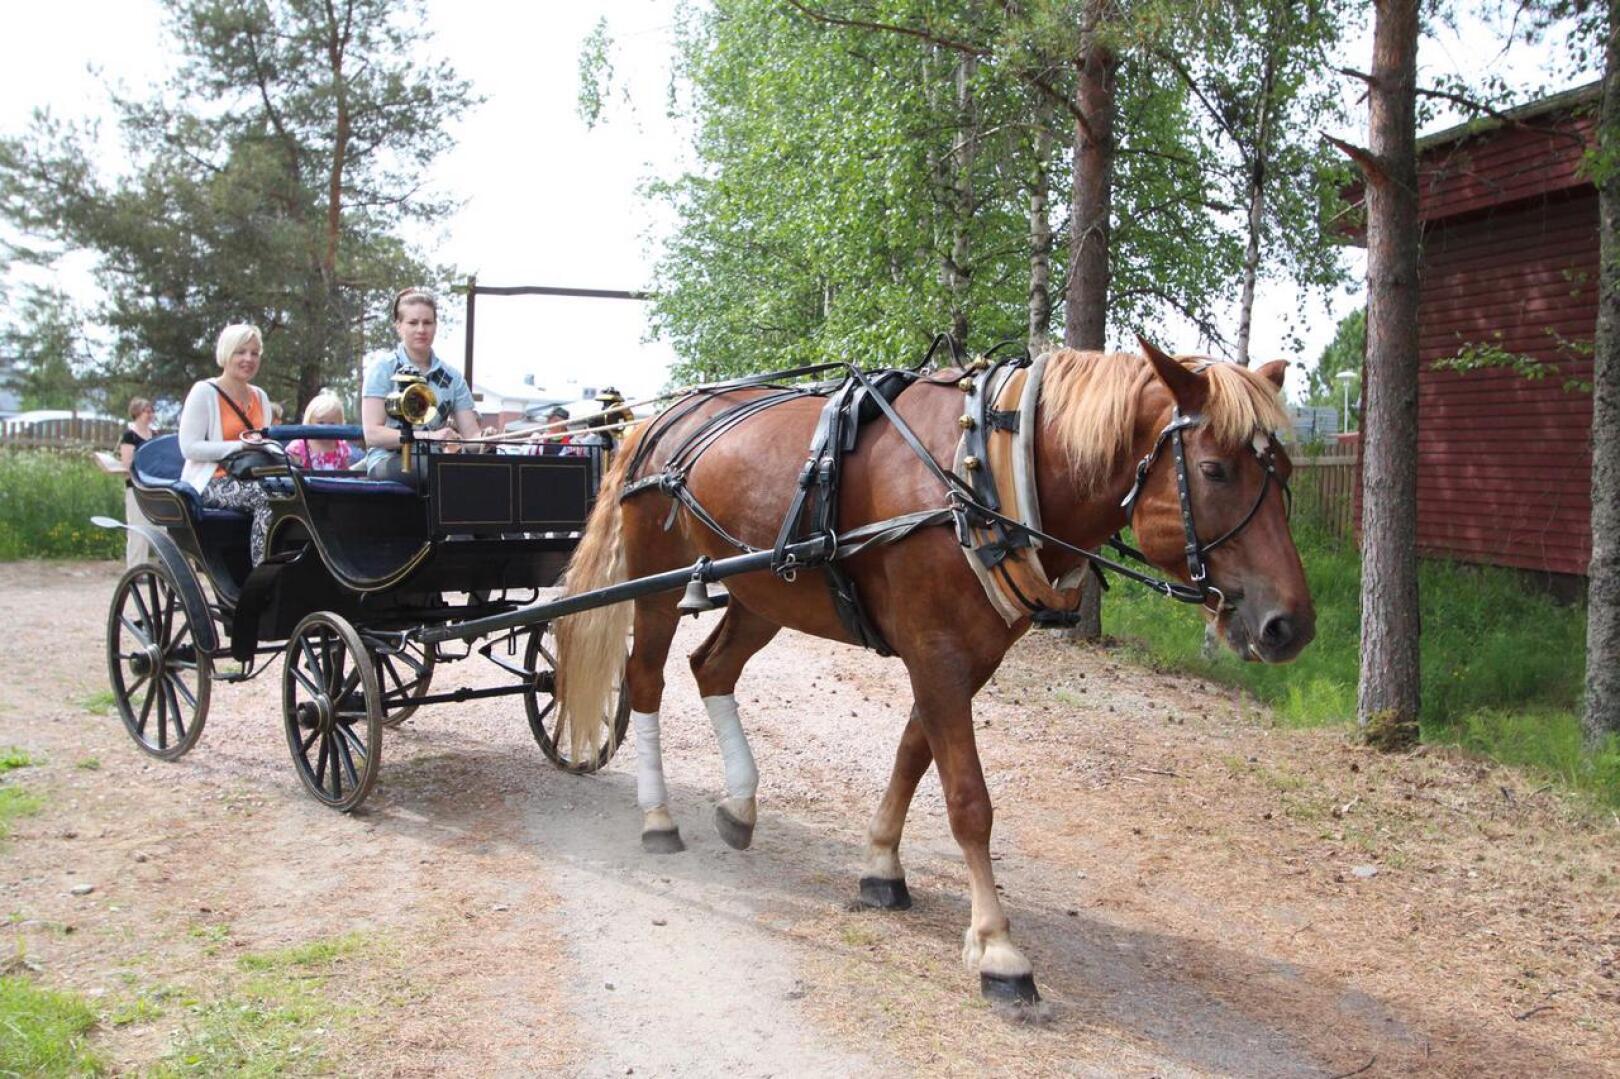 Talonpoikaismuseo Katvalan alueella järjestettävä kotieläinpiha on yksi Kapinaviikon suurimmista vetonauloista. Viime vuonna kävijöitä oli jopa yli 7000, ja avajaispäivänä heille tarjottiin myös hevosajelua.